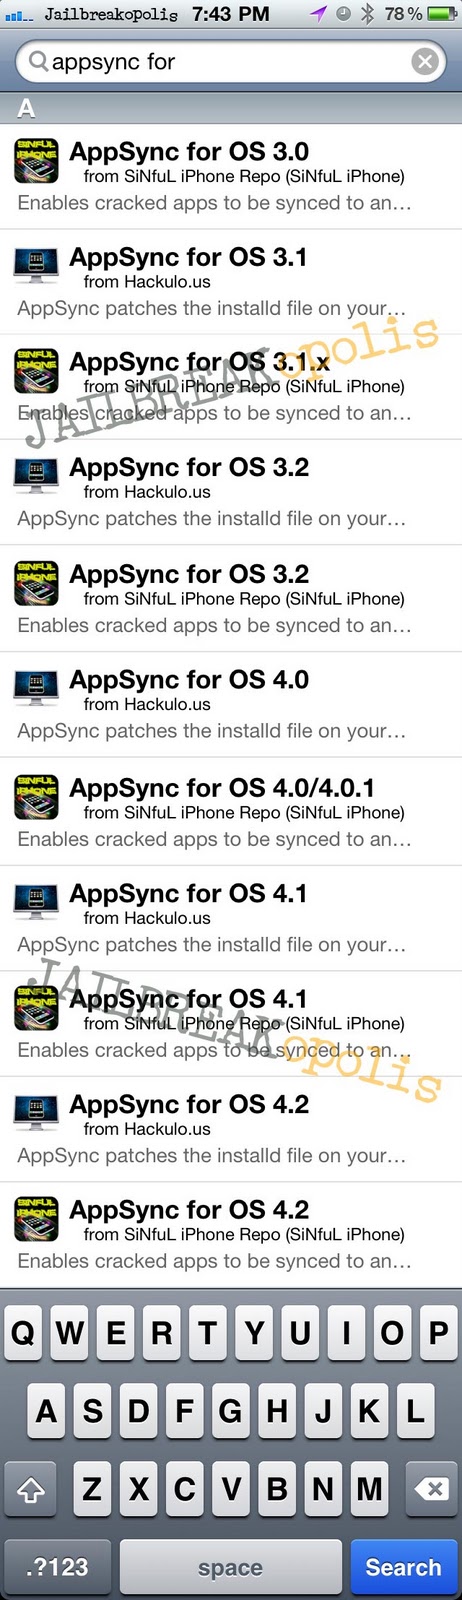 Jailbreakopolis | Jailbreaking iPhones iPods iPad: AppSync ...